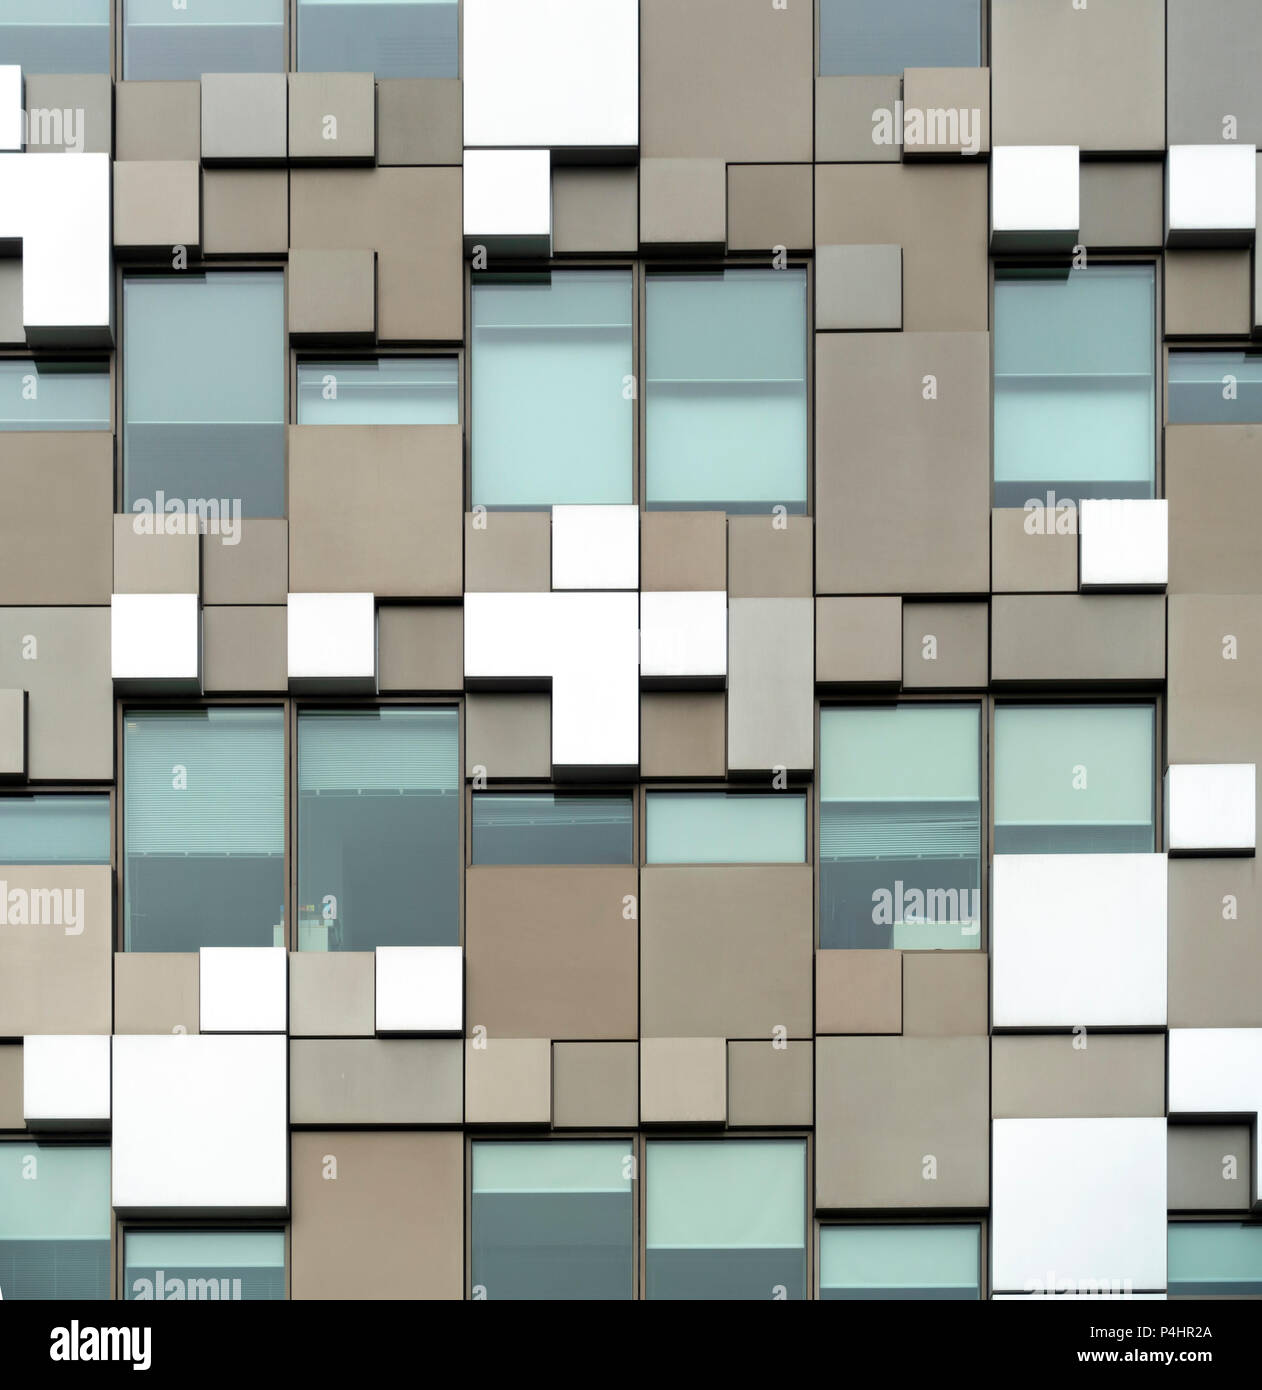 Dettagli architettonici del cubo, un multi-uso sviluppo nel centro della città di Birmingham, West Midlands, England, Regno Unito Foto Stock